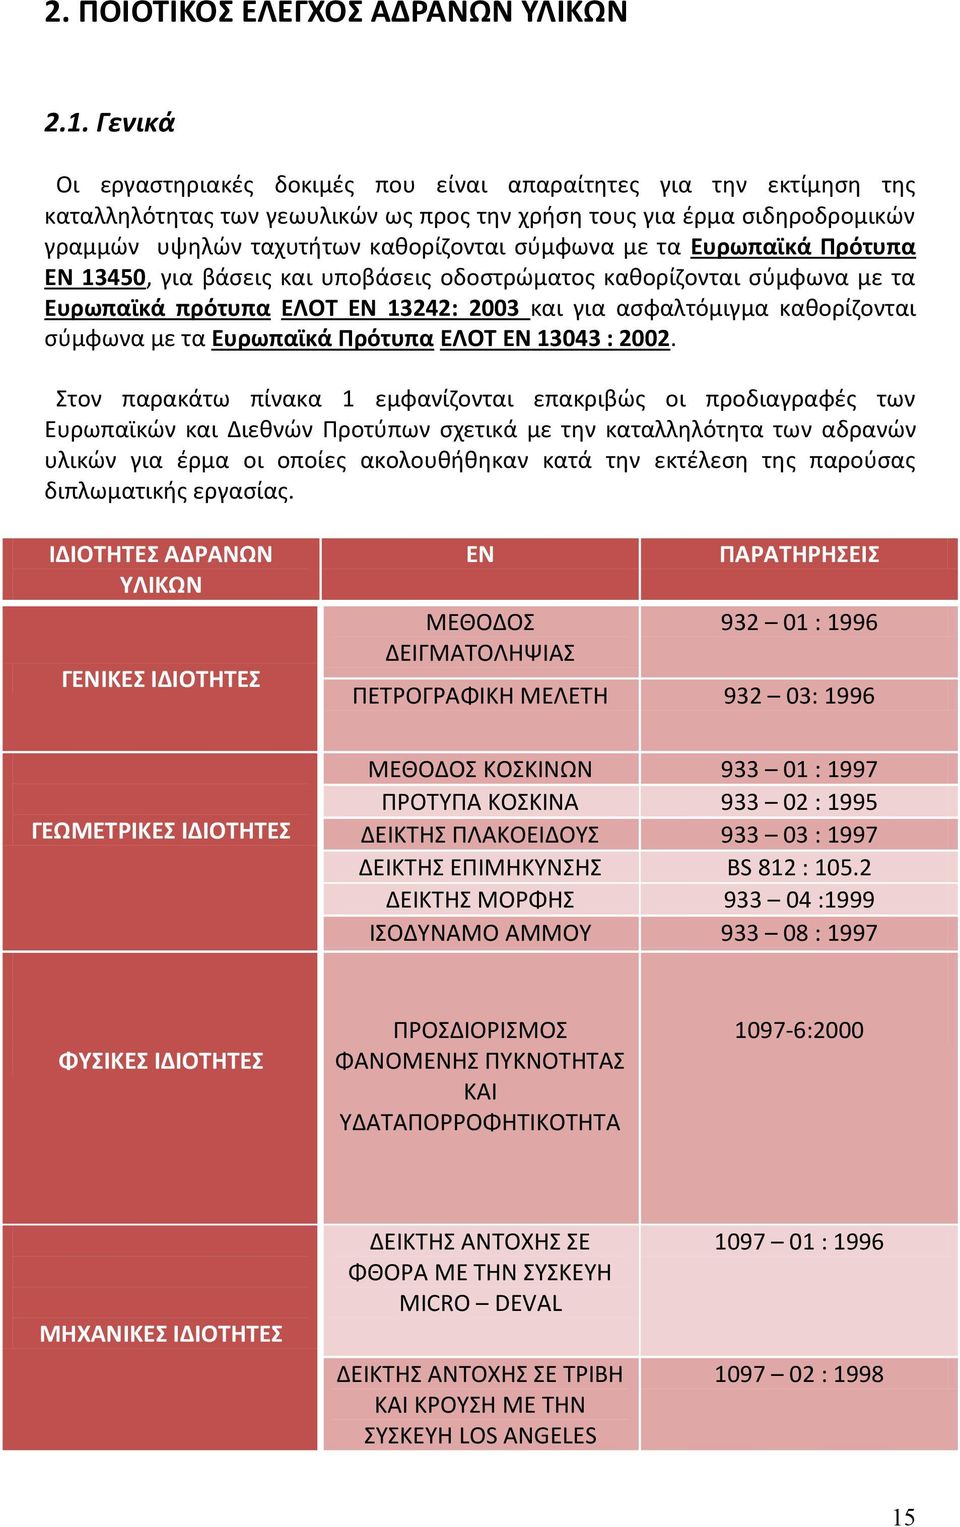 τα Ευρωπαϊκά Πρότυπα ΕΝ 13450, για βάσεις και υποβάσεις οδοστρώματος καθορίζονται σύμφωνα με τα Ευρωπαϊκά πρότυπα ΕΛΟΤ ΕΝ 13242: 2003 και για ασφαλτόμιγμα καθορίζονται σύμφωνα με τα Ευρωπαϊκά Πρότυπα